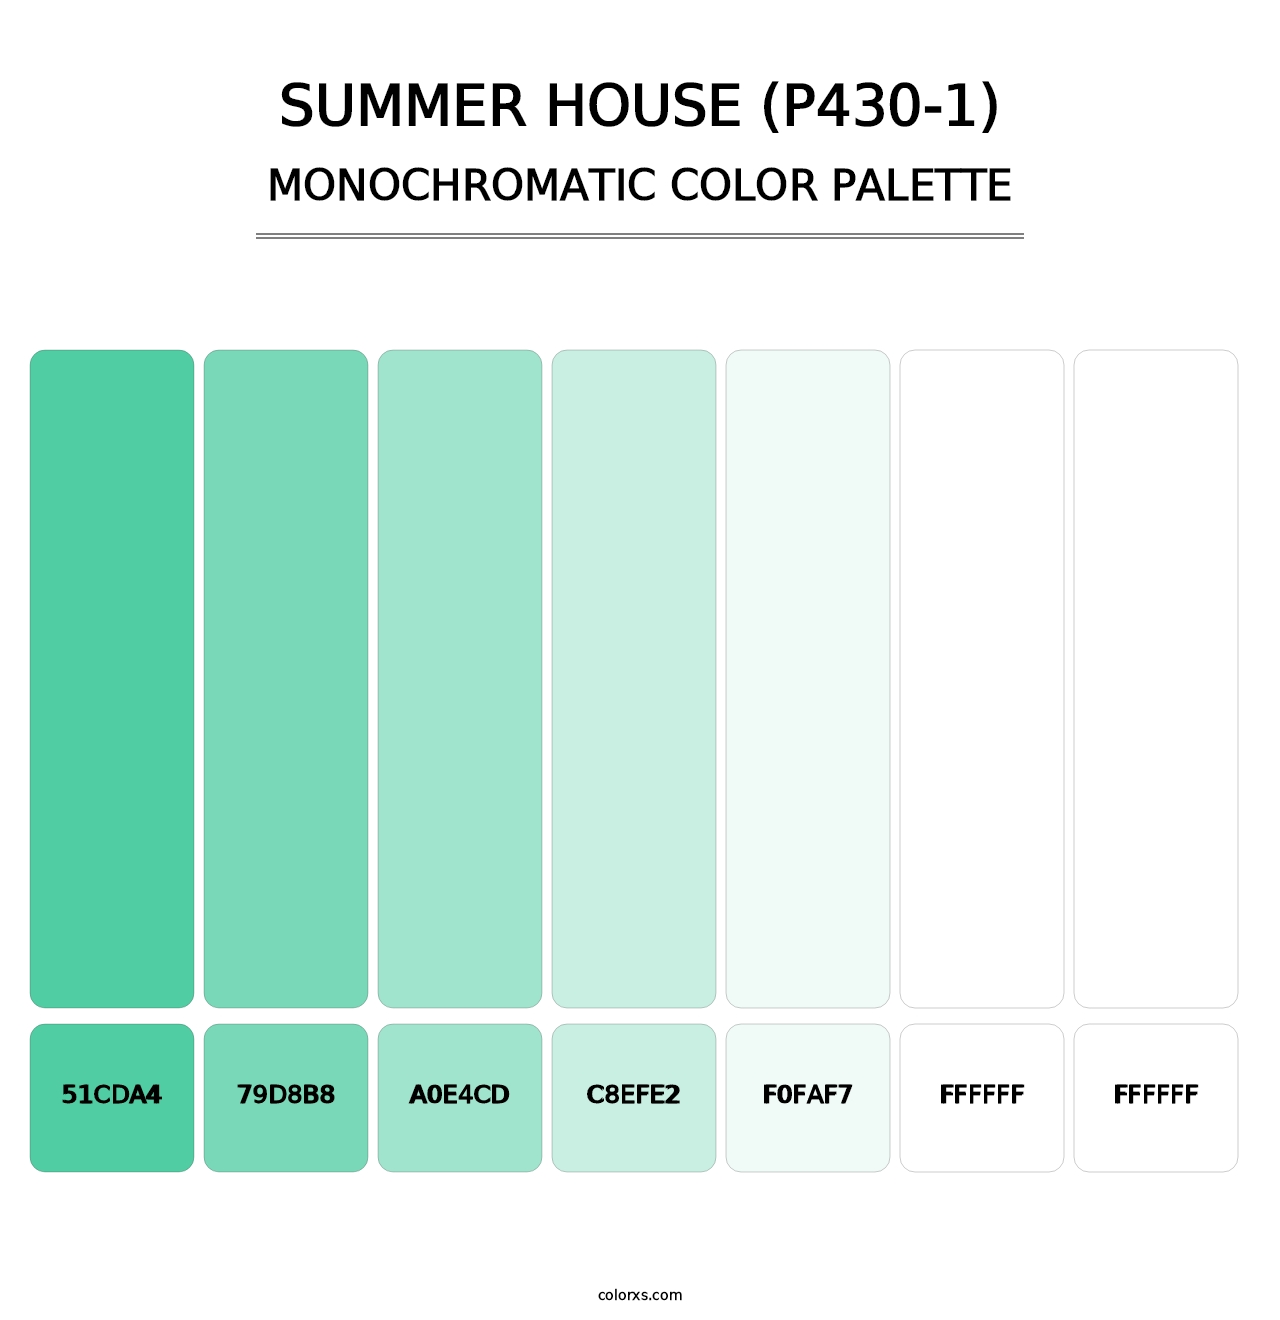 Summer House (P430-1) - Monochromatic Color Palette